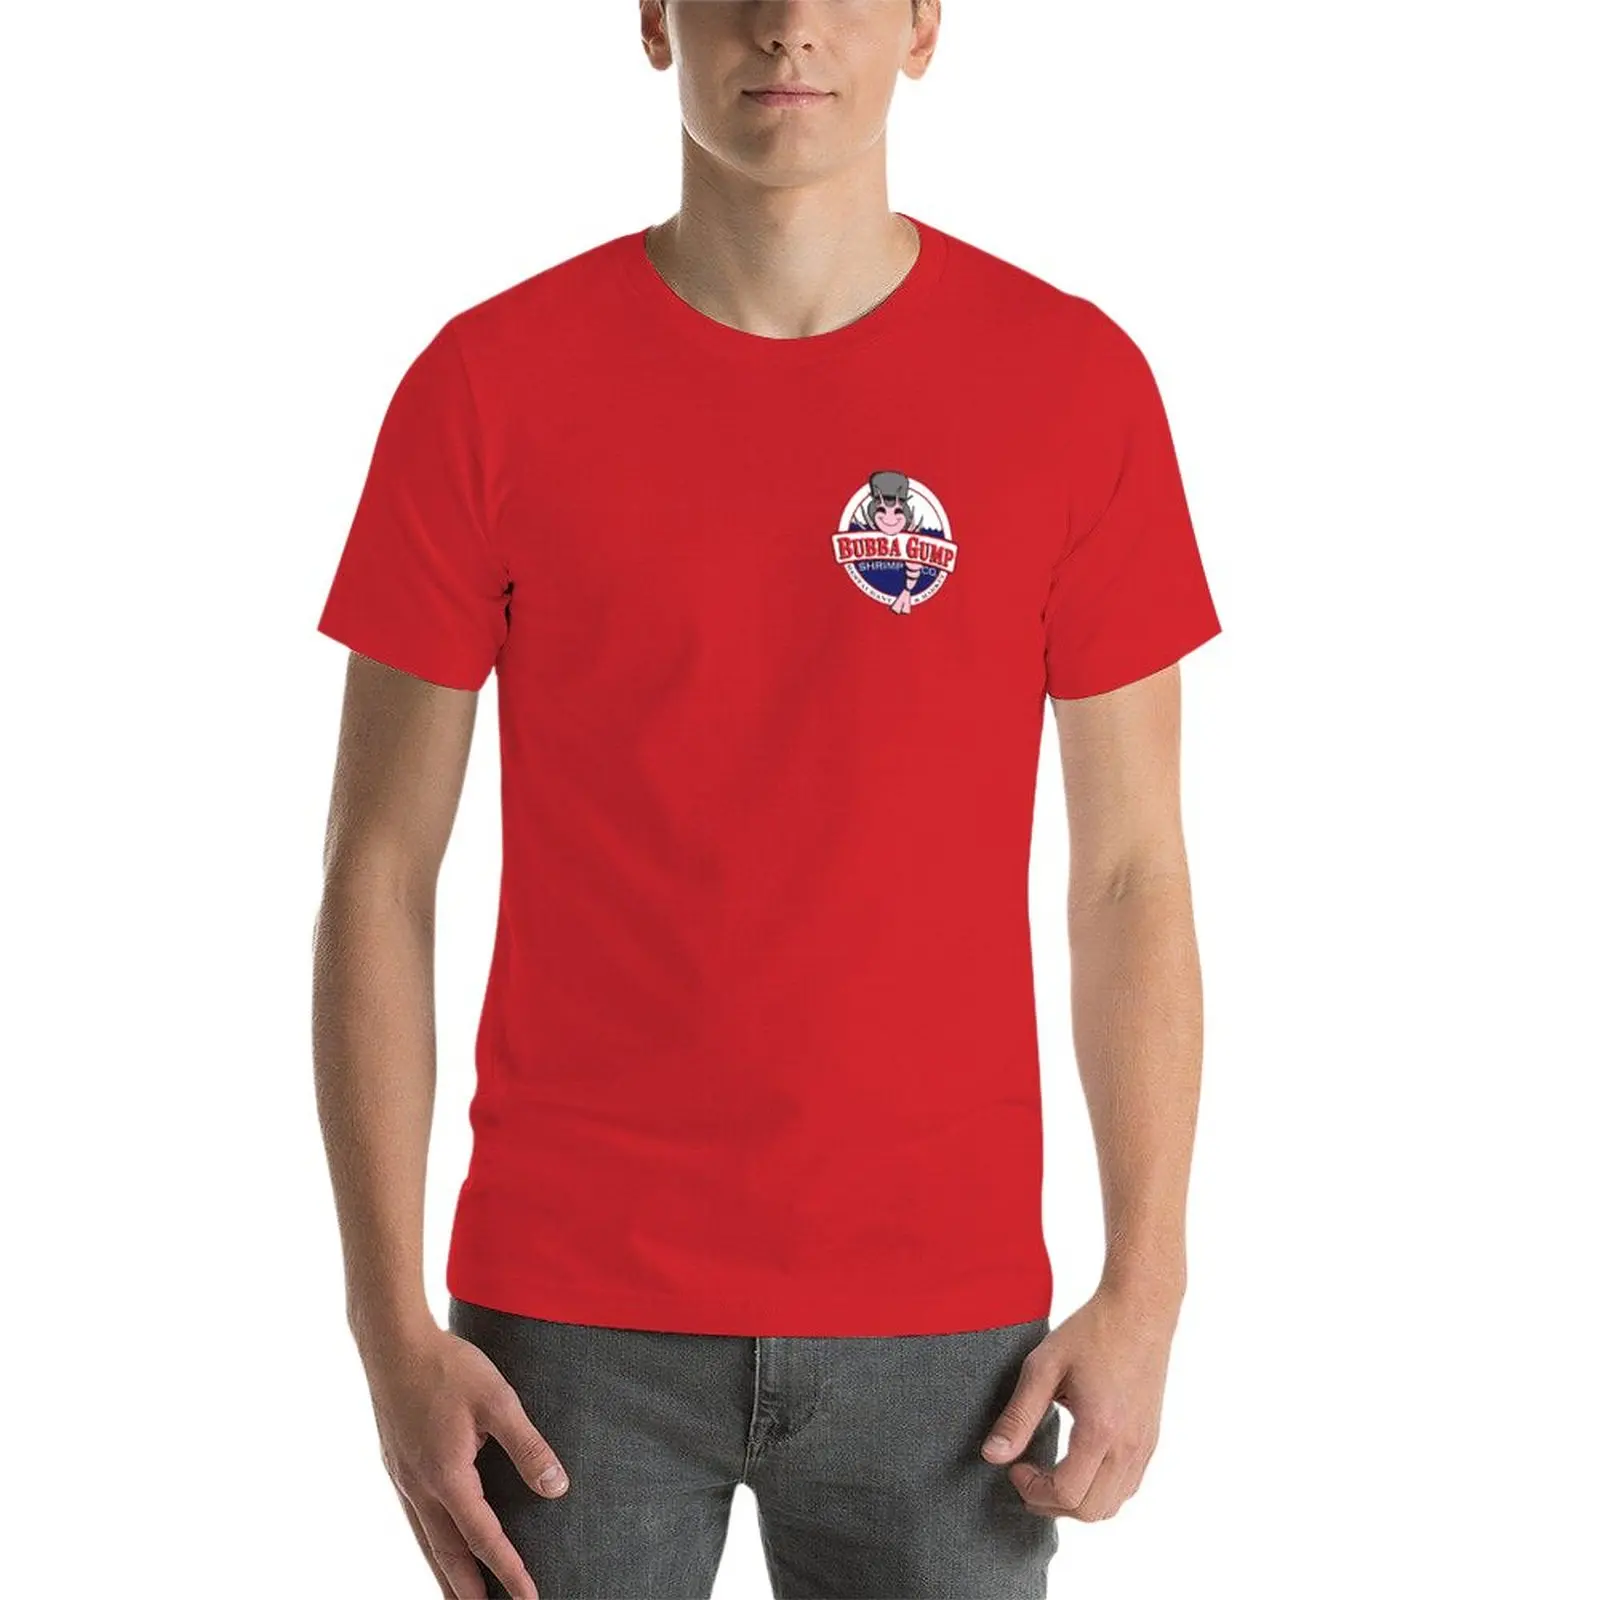 Bubba Gump Shrimp co. Футболка, быстросохнущая футболка, великолепная футболка, мужские забавные футболки Изображение 3